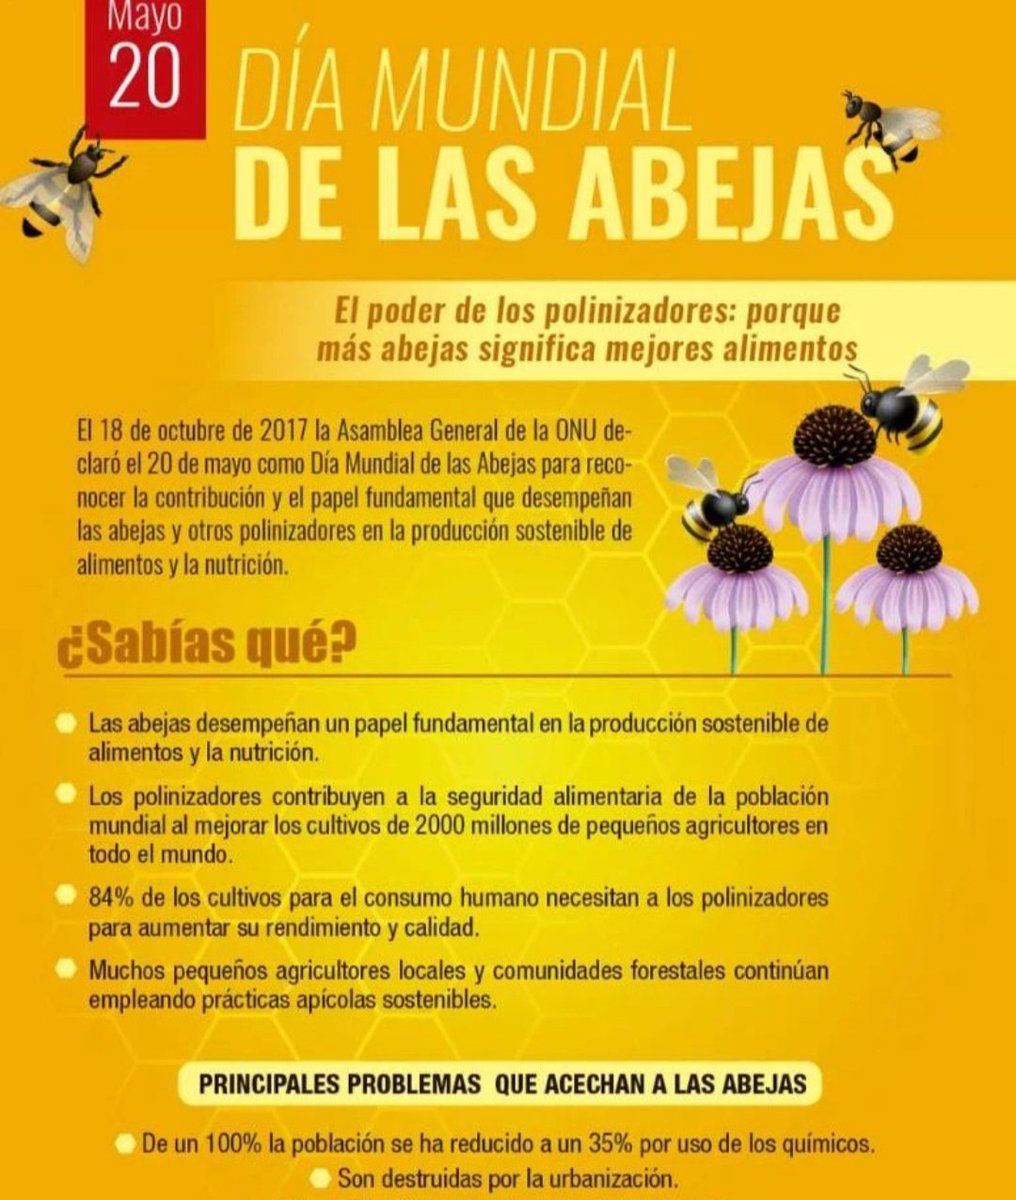 Protejamos a la #abejas.
#20DeMayo, #DiaMundialDeLasAbejas.
#Protejamoselplaneta, #CuidemoselMedioAmbiente.